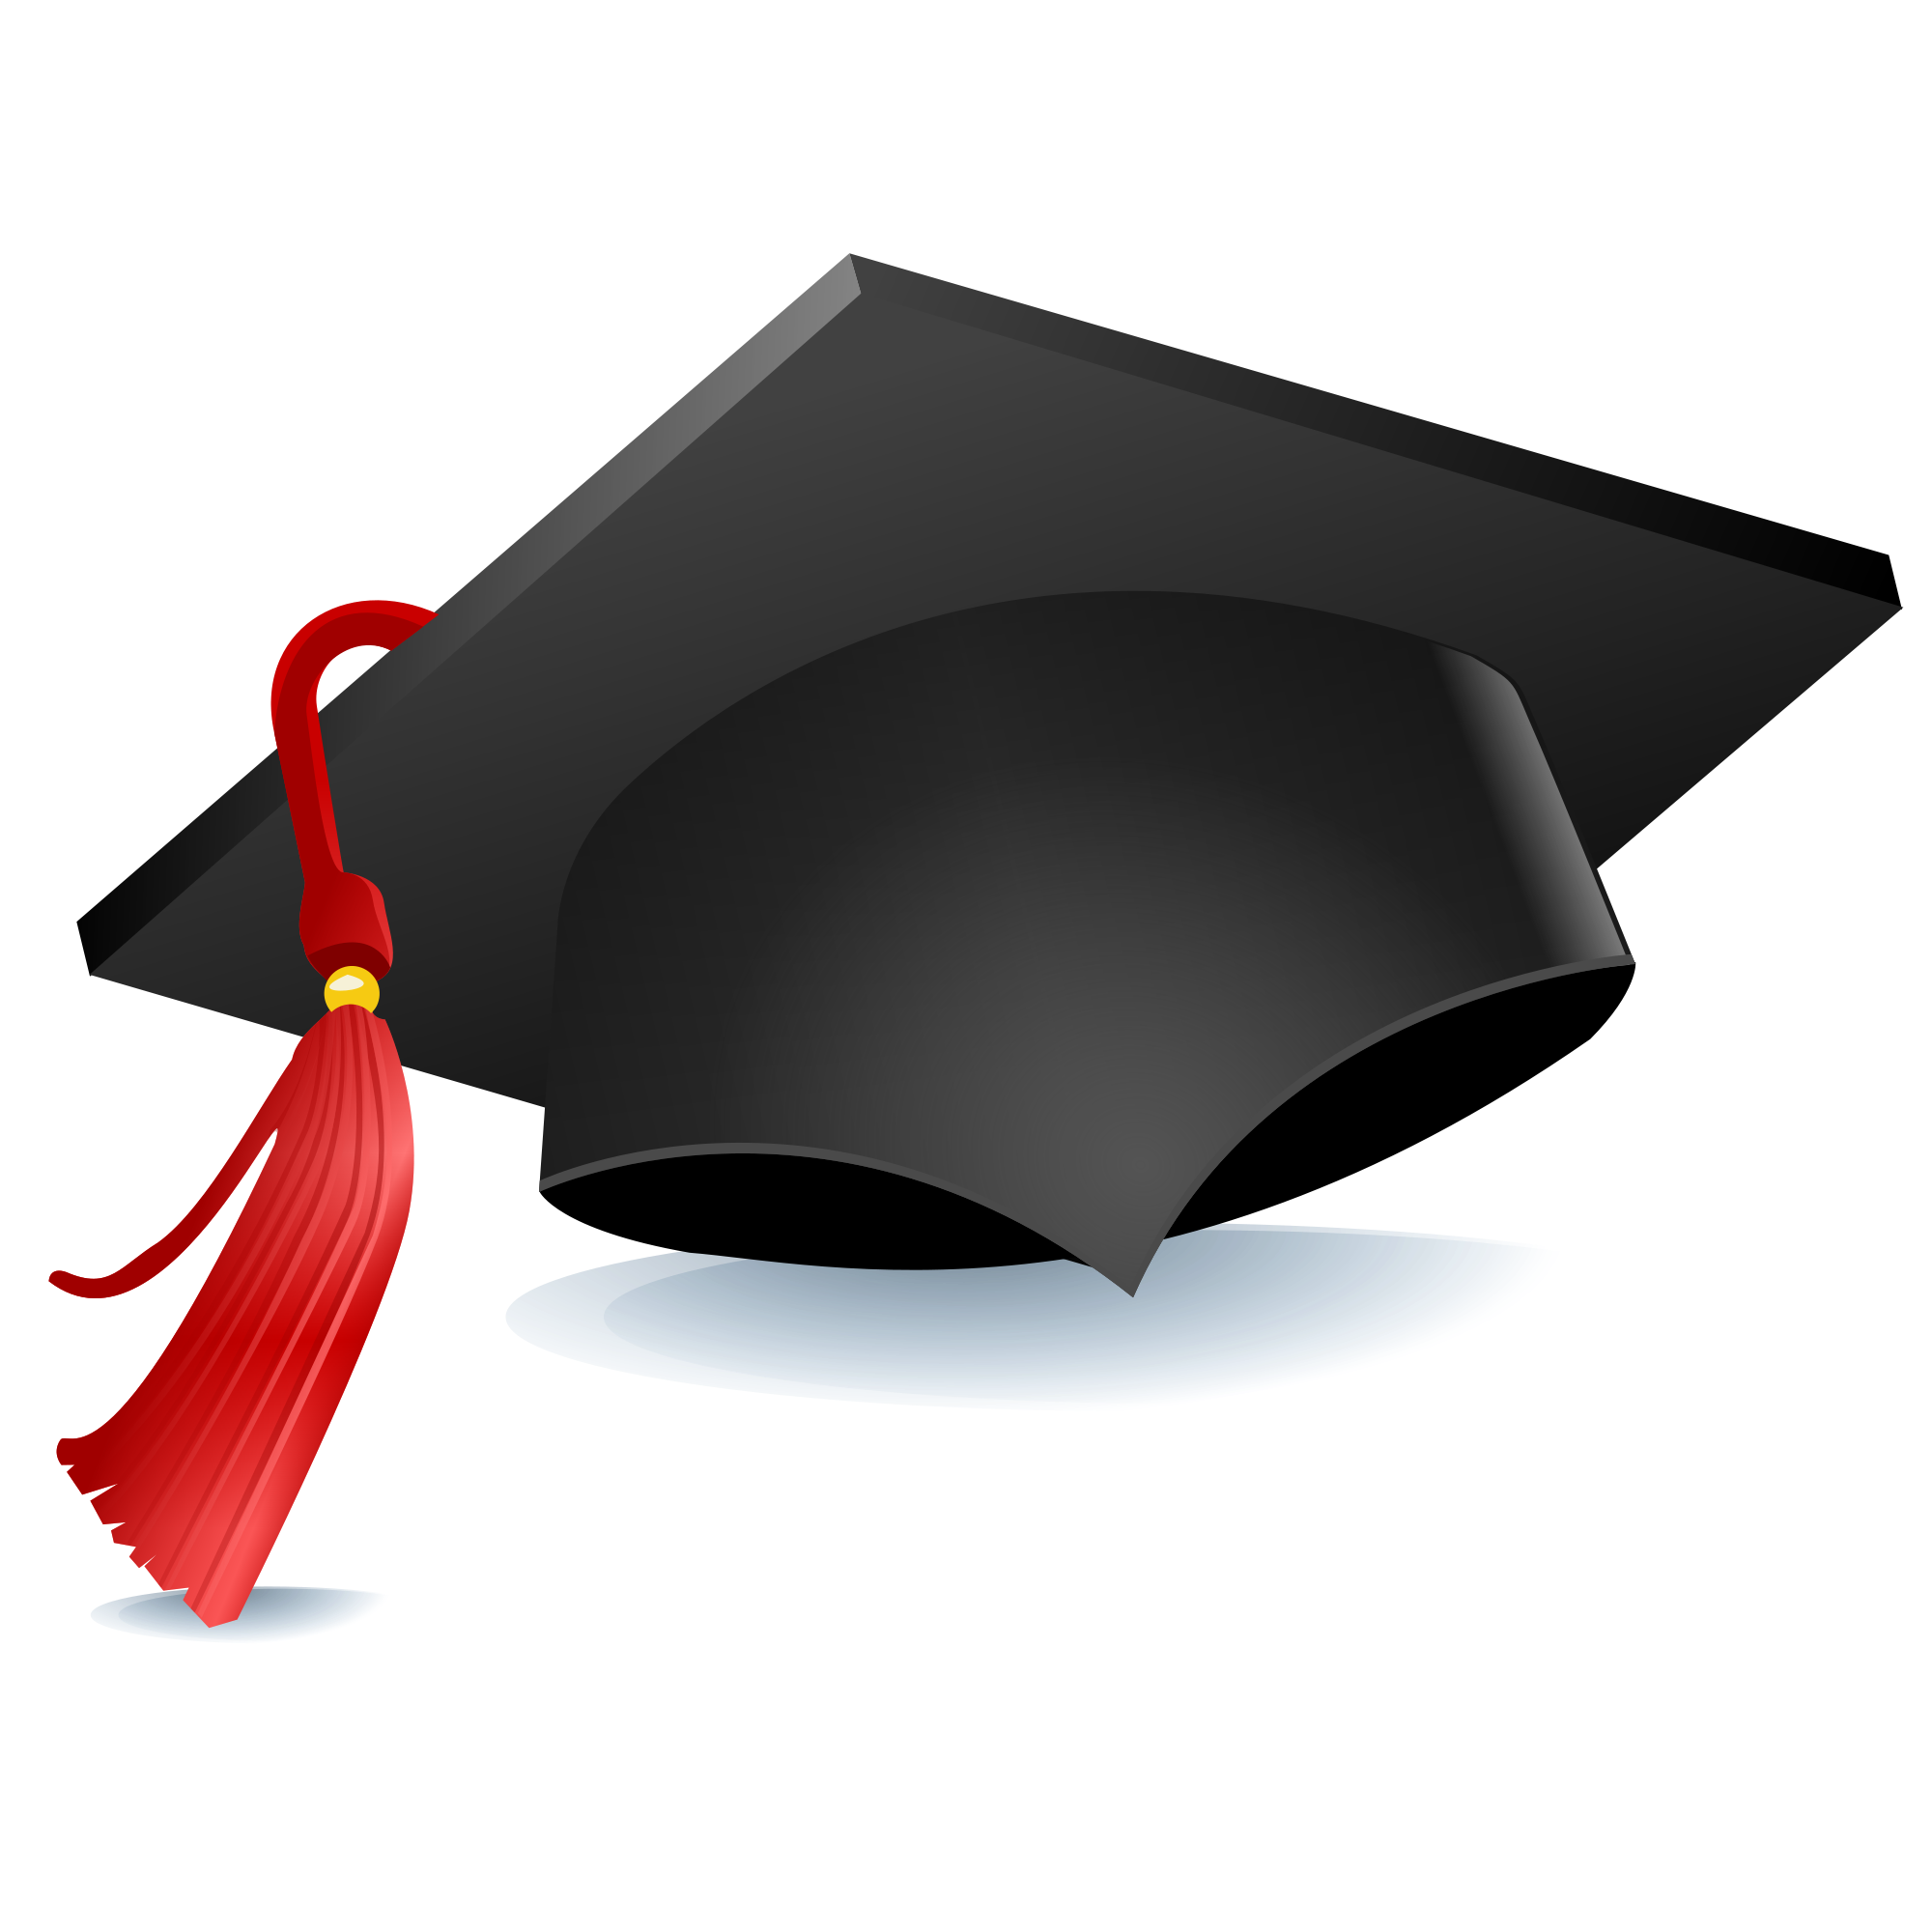 File:Graduation cap.png